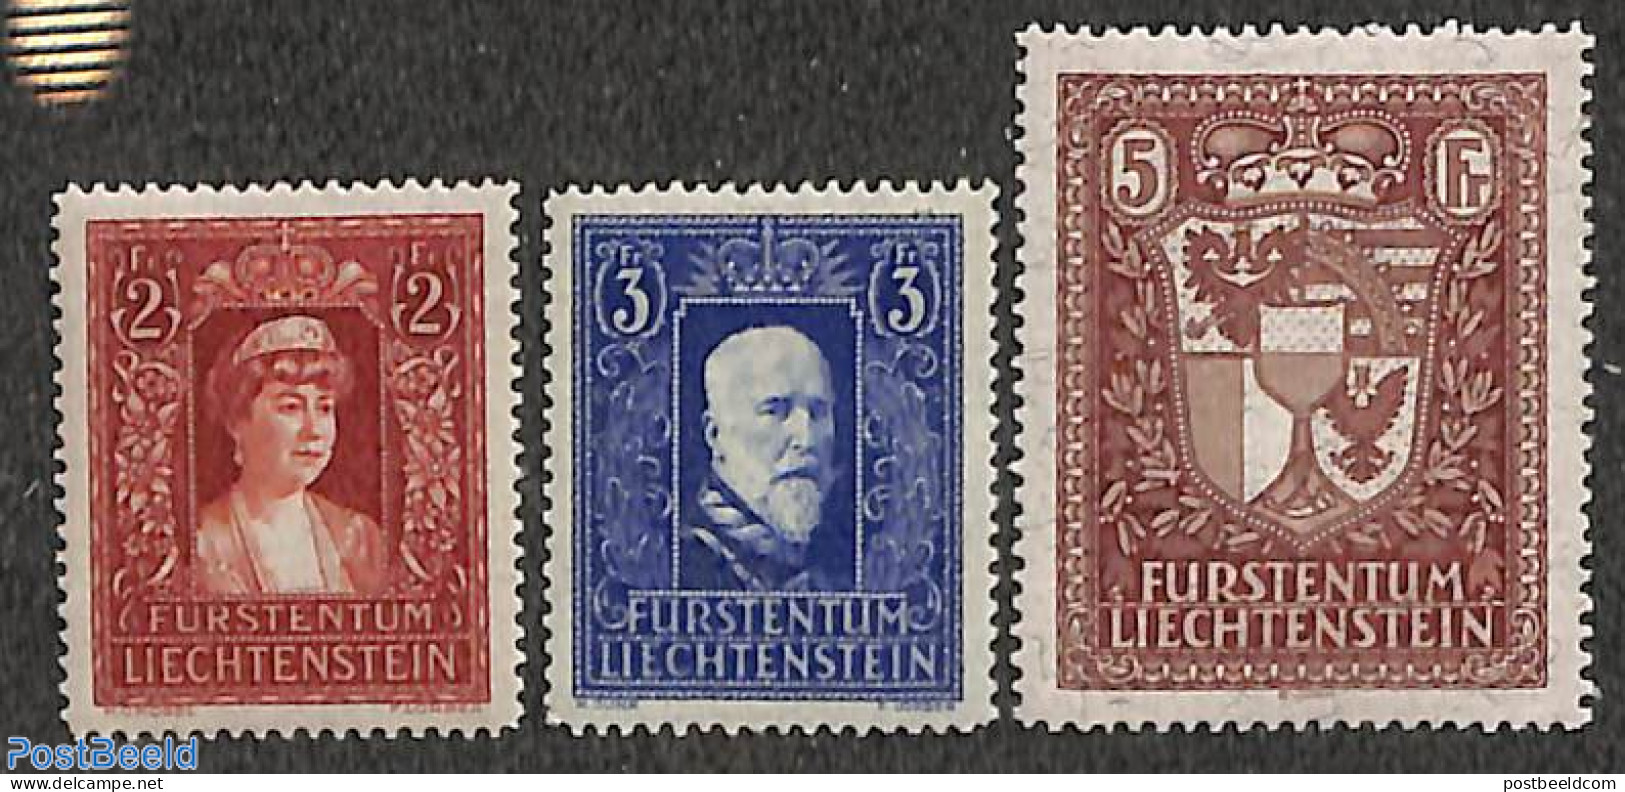 Liechtenstein 1933 Definitives 3v, Mint NH, History - Coat Of Arms - Neufs